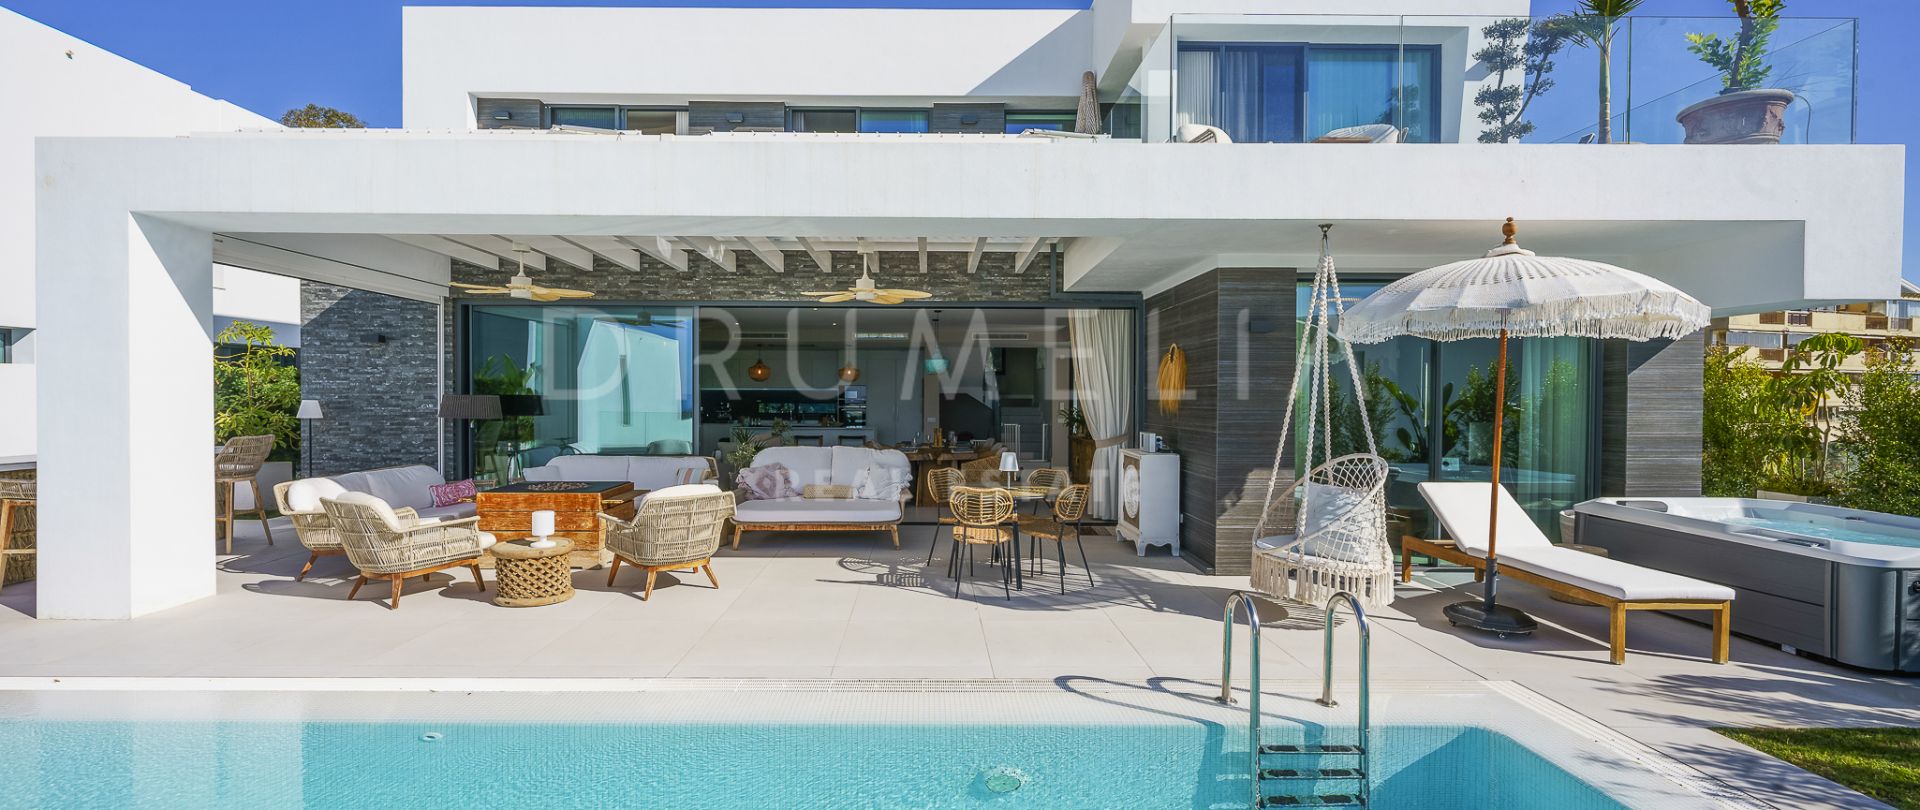 Spectaculaire gloednieuwe moderne luxe villa met zeezicht in Cabo Royale, Marbella Oost